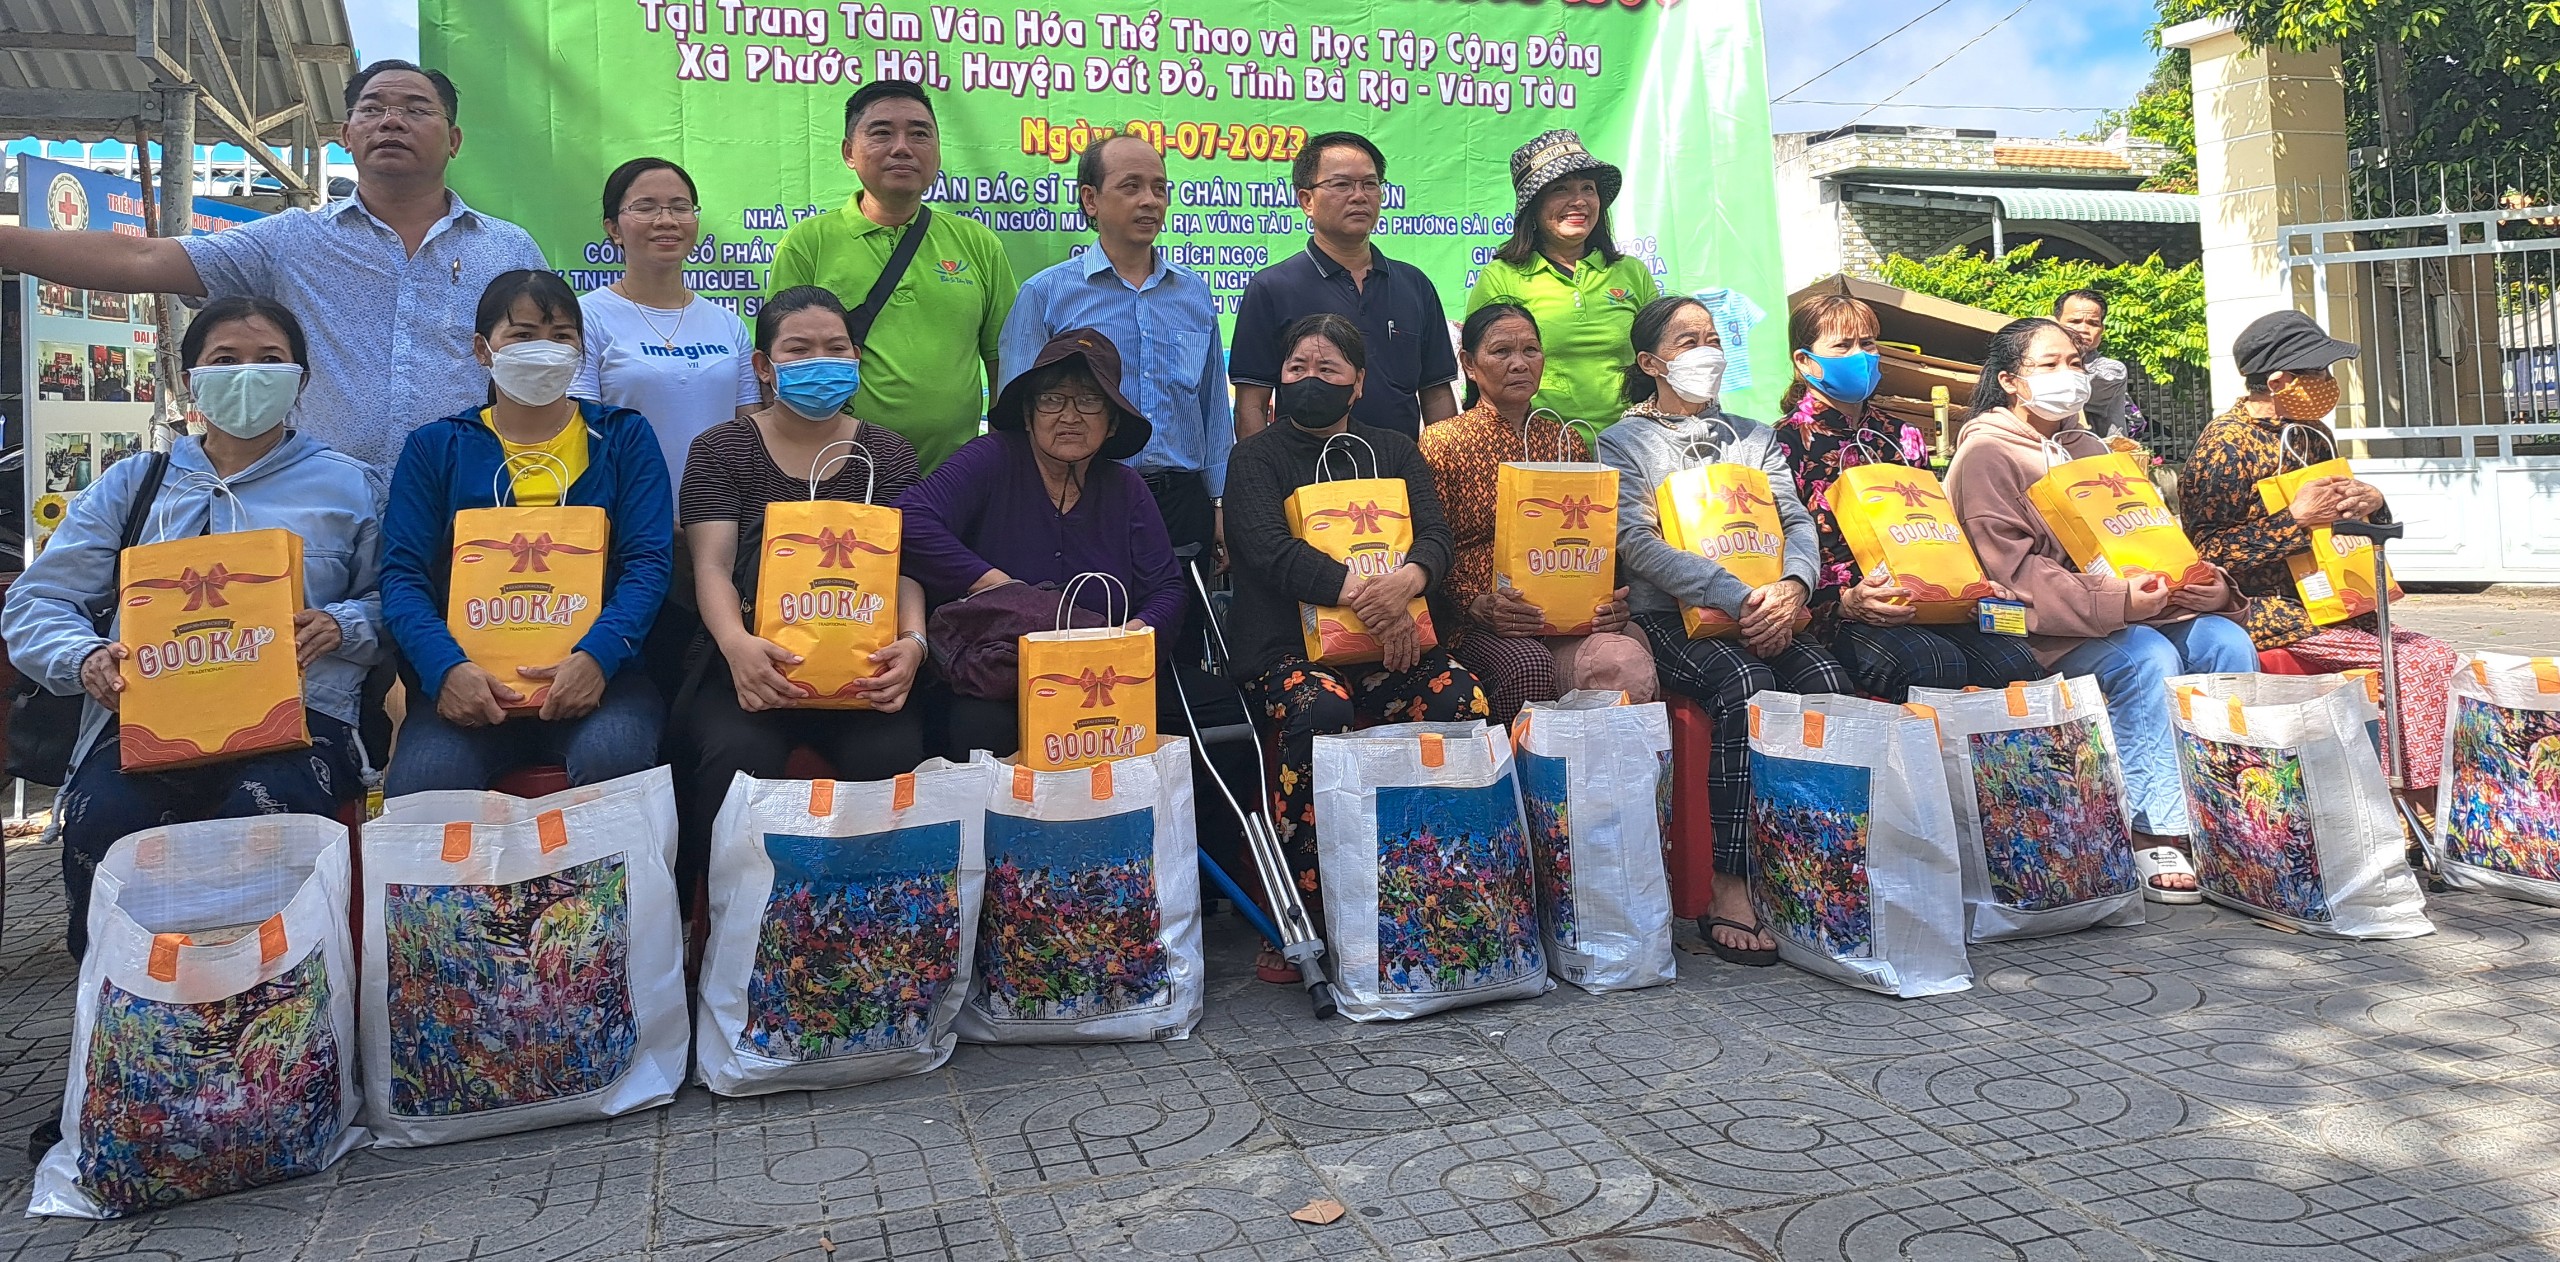 Hội viên hội người mù được tặng quà và xe lăn từ nhà tài trợ.